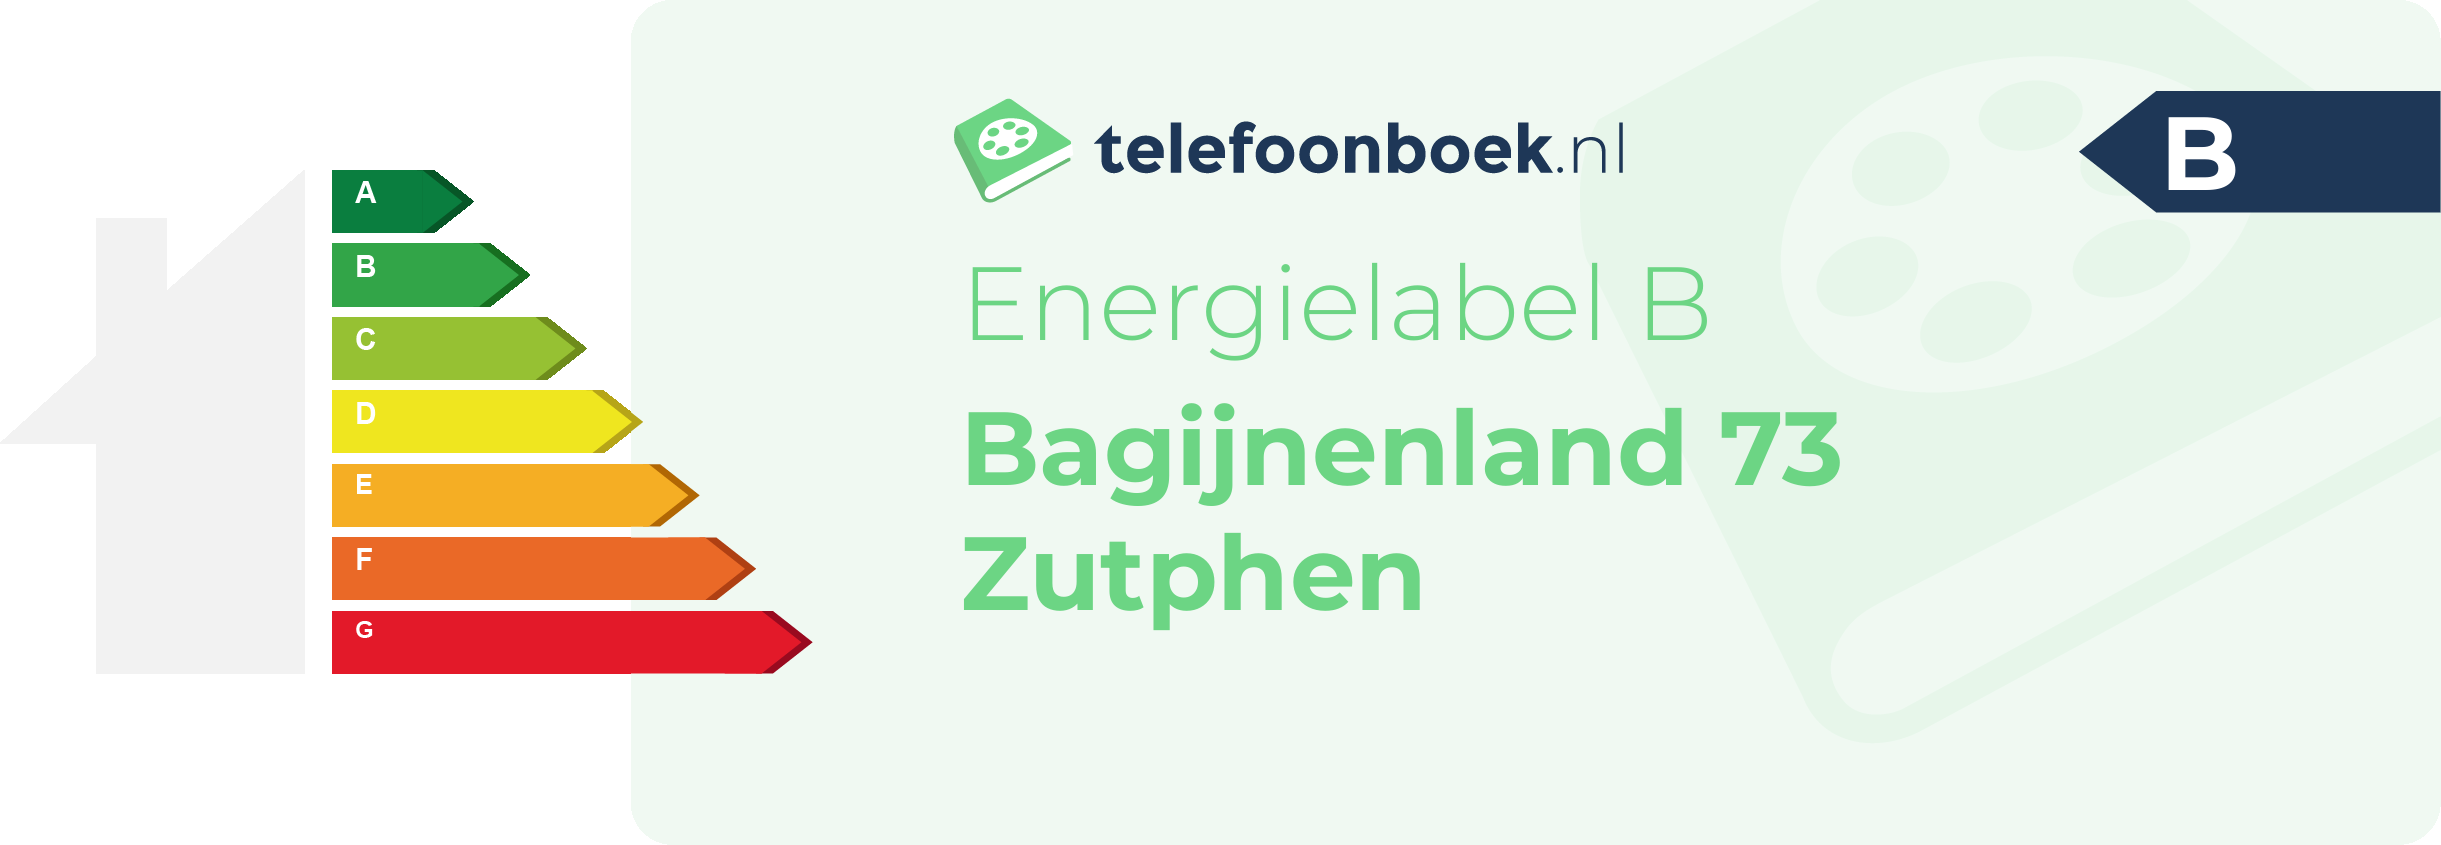 Energielabel Bagijnenland 73 Zutphen